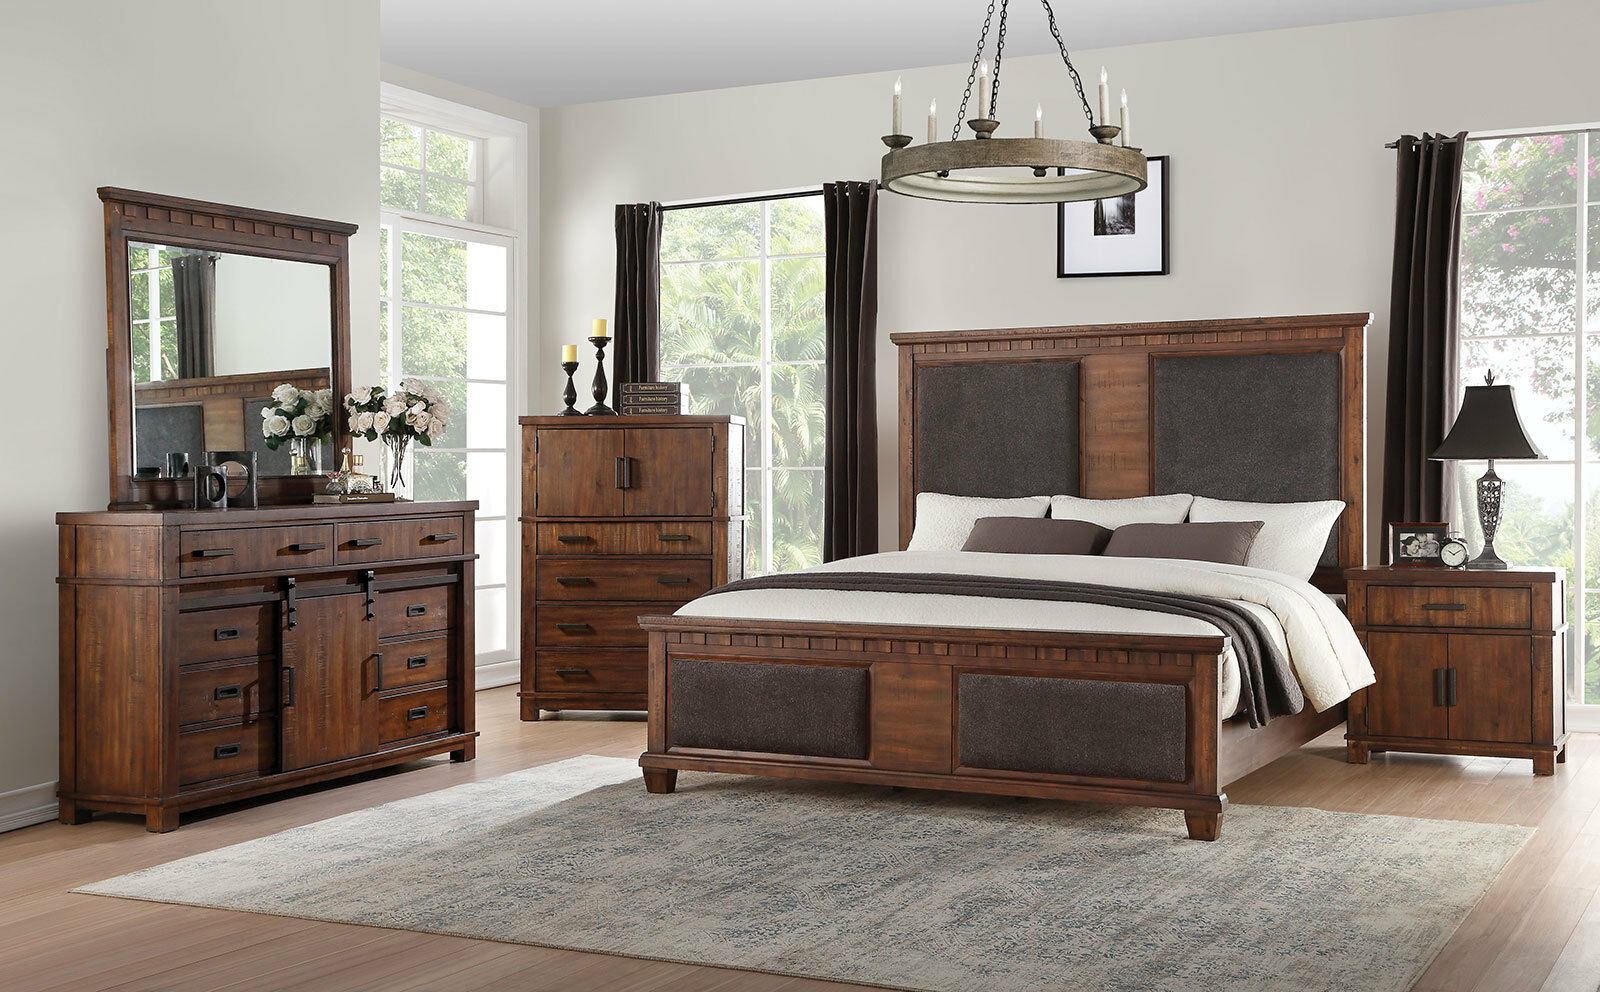 lq bedroom furniture set